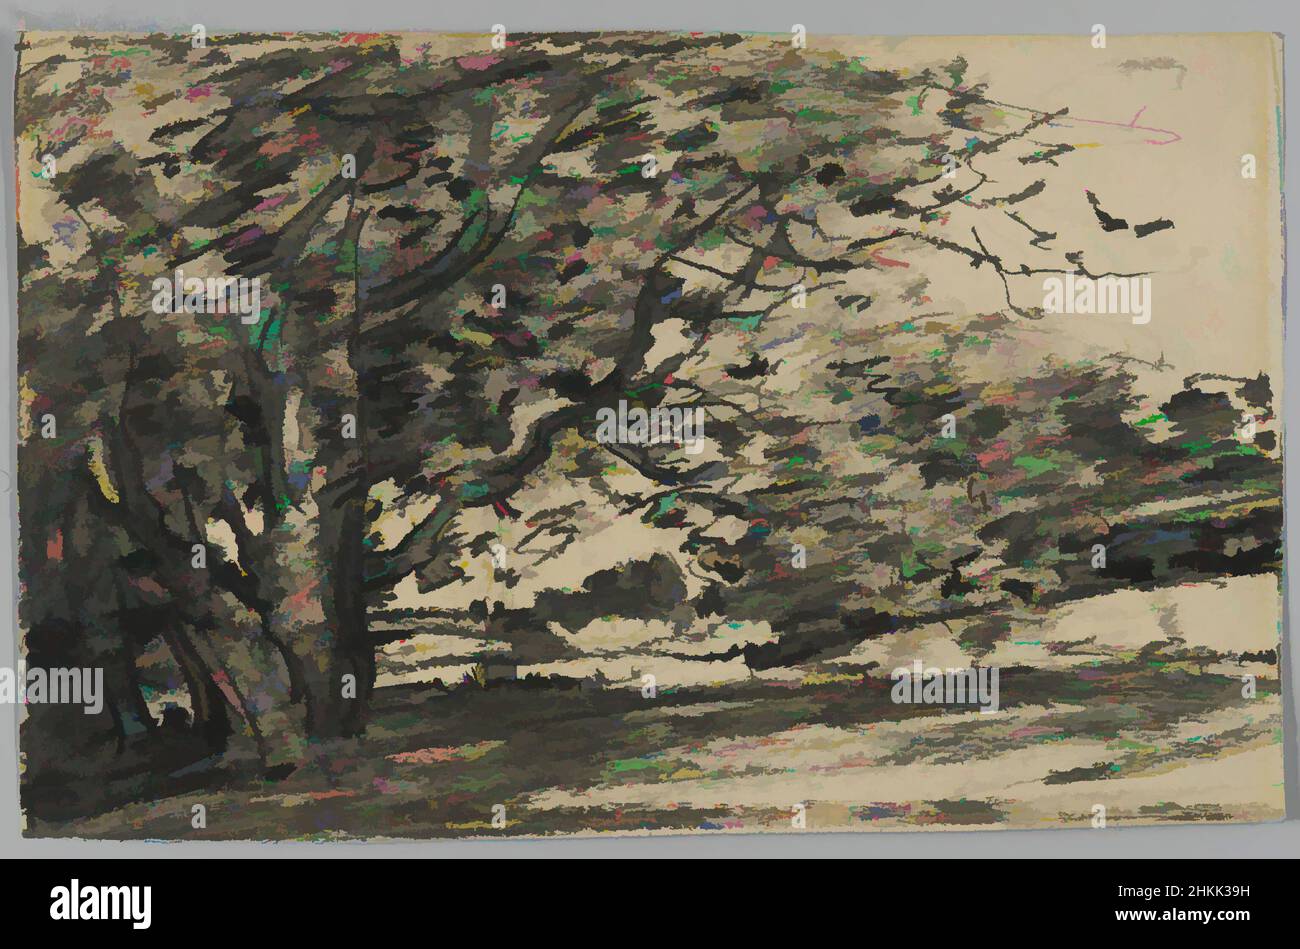 Kunst inspiriert von Studie der Bäume, Joseph Frank Currier, Amerikaner, 1843-1909, Kohle auf Papier, Ca. 1880, Blatt: 4 3/8 x 6 15/16 Zoll, 11,1 x 17,6 cm, 19th Jahrhundert, amerikanisch, Kohle, Zeichnung, Feine Linien, Druck, Baum, Klassisches Werk, das von Artotop mit einem Schuss Moderne modernisiert wurde. Formen, Farbe und Wert, auffällige visuelle Wirkung auf Kunst. Emotionen durch Freiheit von Kunstwerken auf zeitgemäße Weise. Eine zeitlose Botschaft, die eine wild kreative neue Richtung verfolgt. Künstler, die sich dem digitalen Medium zuwenden und die Artotop NFT erschaffen Stockfoto